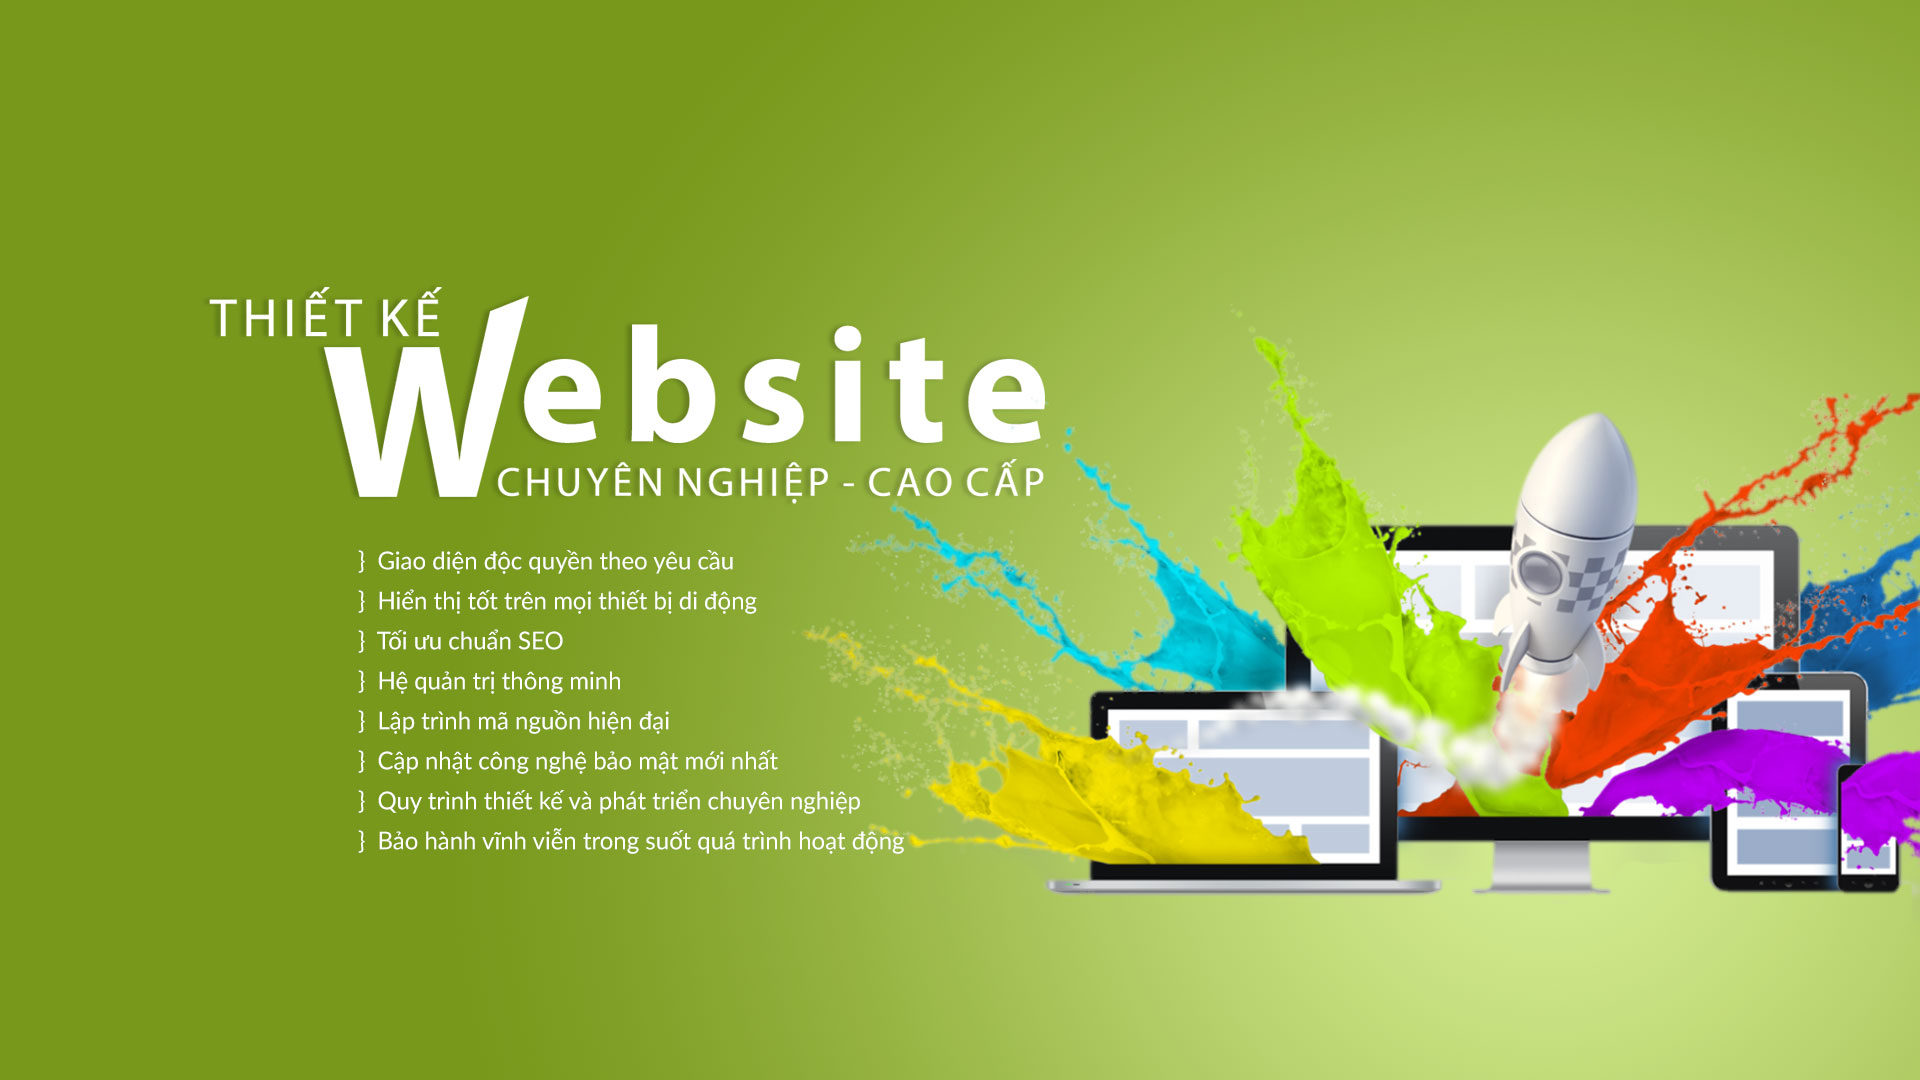 công ty thiết kế website hàng đầu tại đà nẵng, công ty thiết kế website vara, thiết kế website tại vara